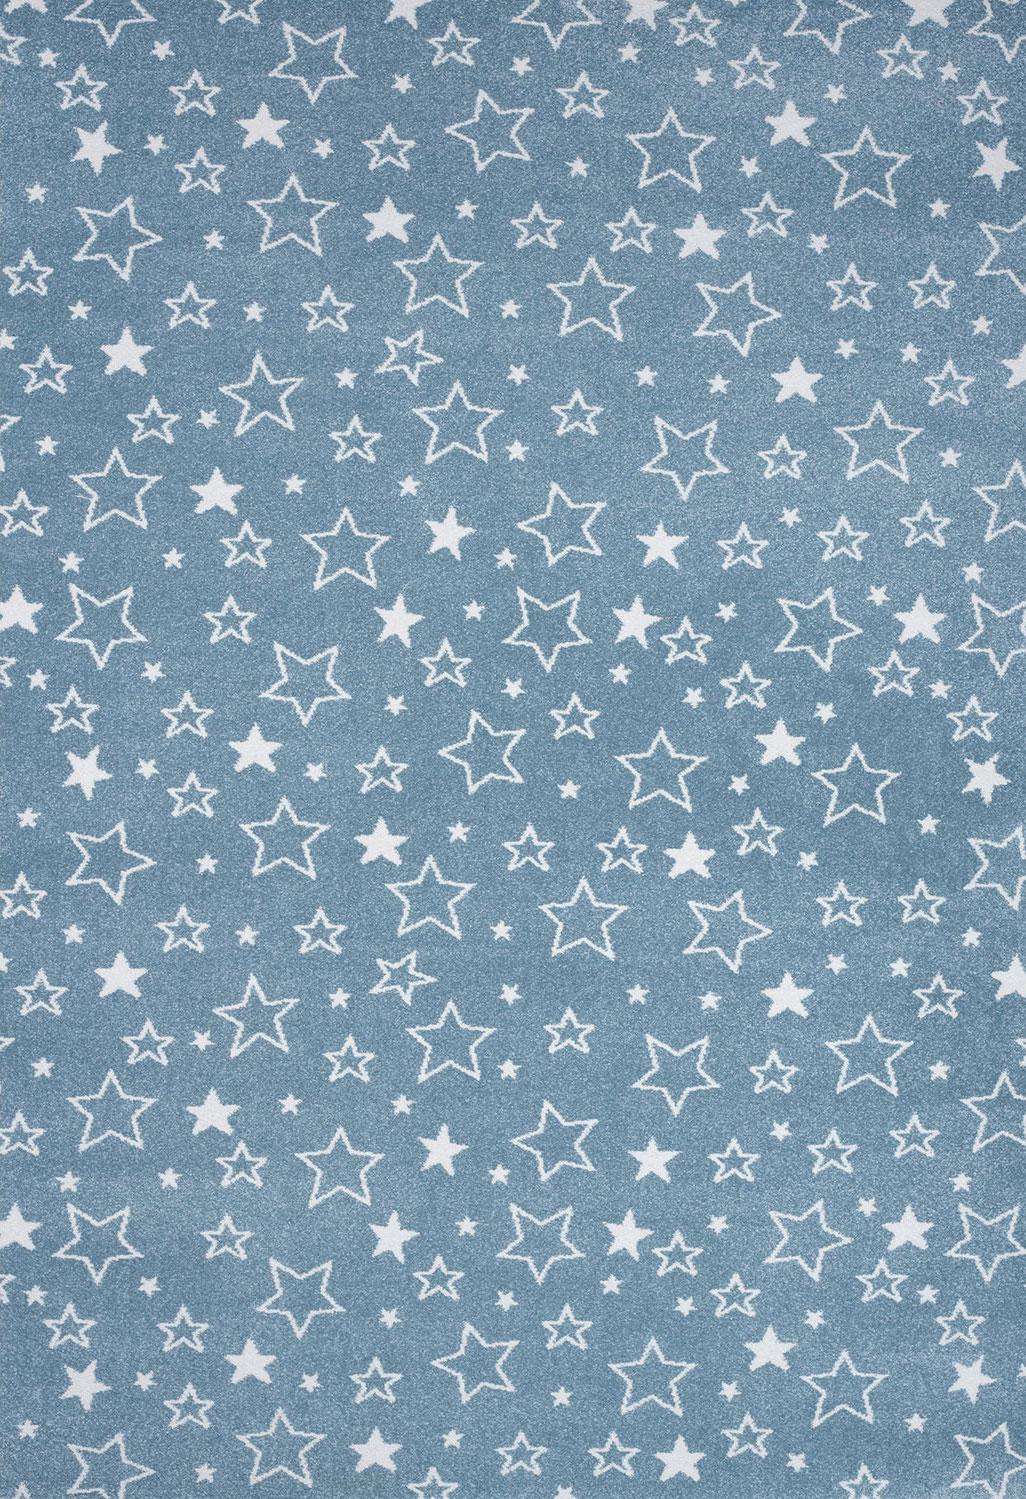 Παιδικό χαλί Diamond kids 8468/231 πετρόλ αστεράκια - 1,30x1,90 Colore Colori